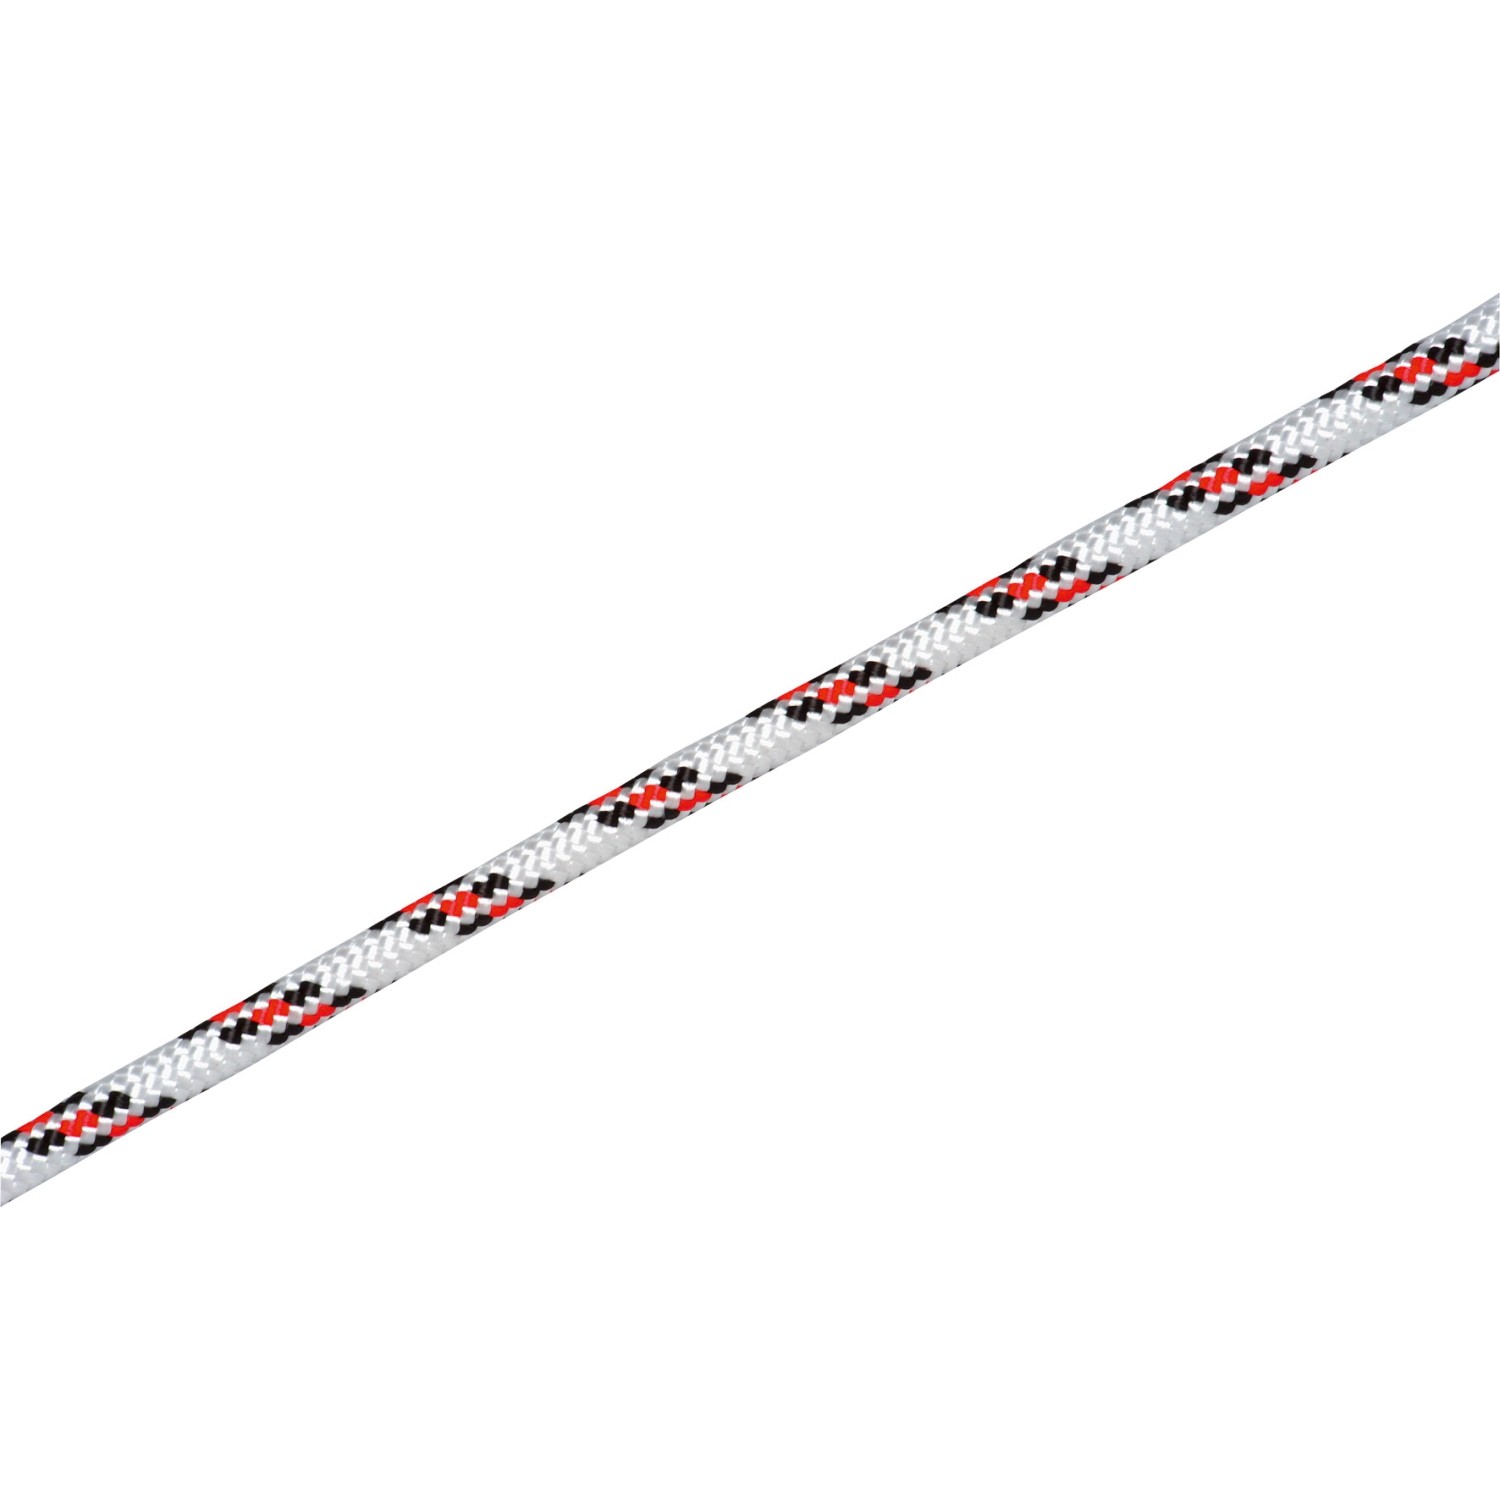 LUX Schotleine Ø 12 mm Weiß-Rot-Schwarz Meterware von LUX-TOOLS